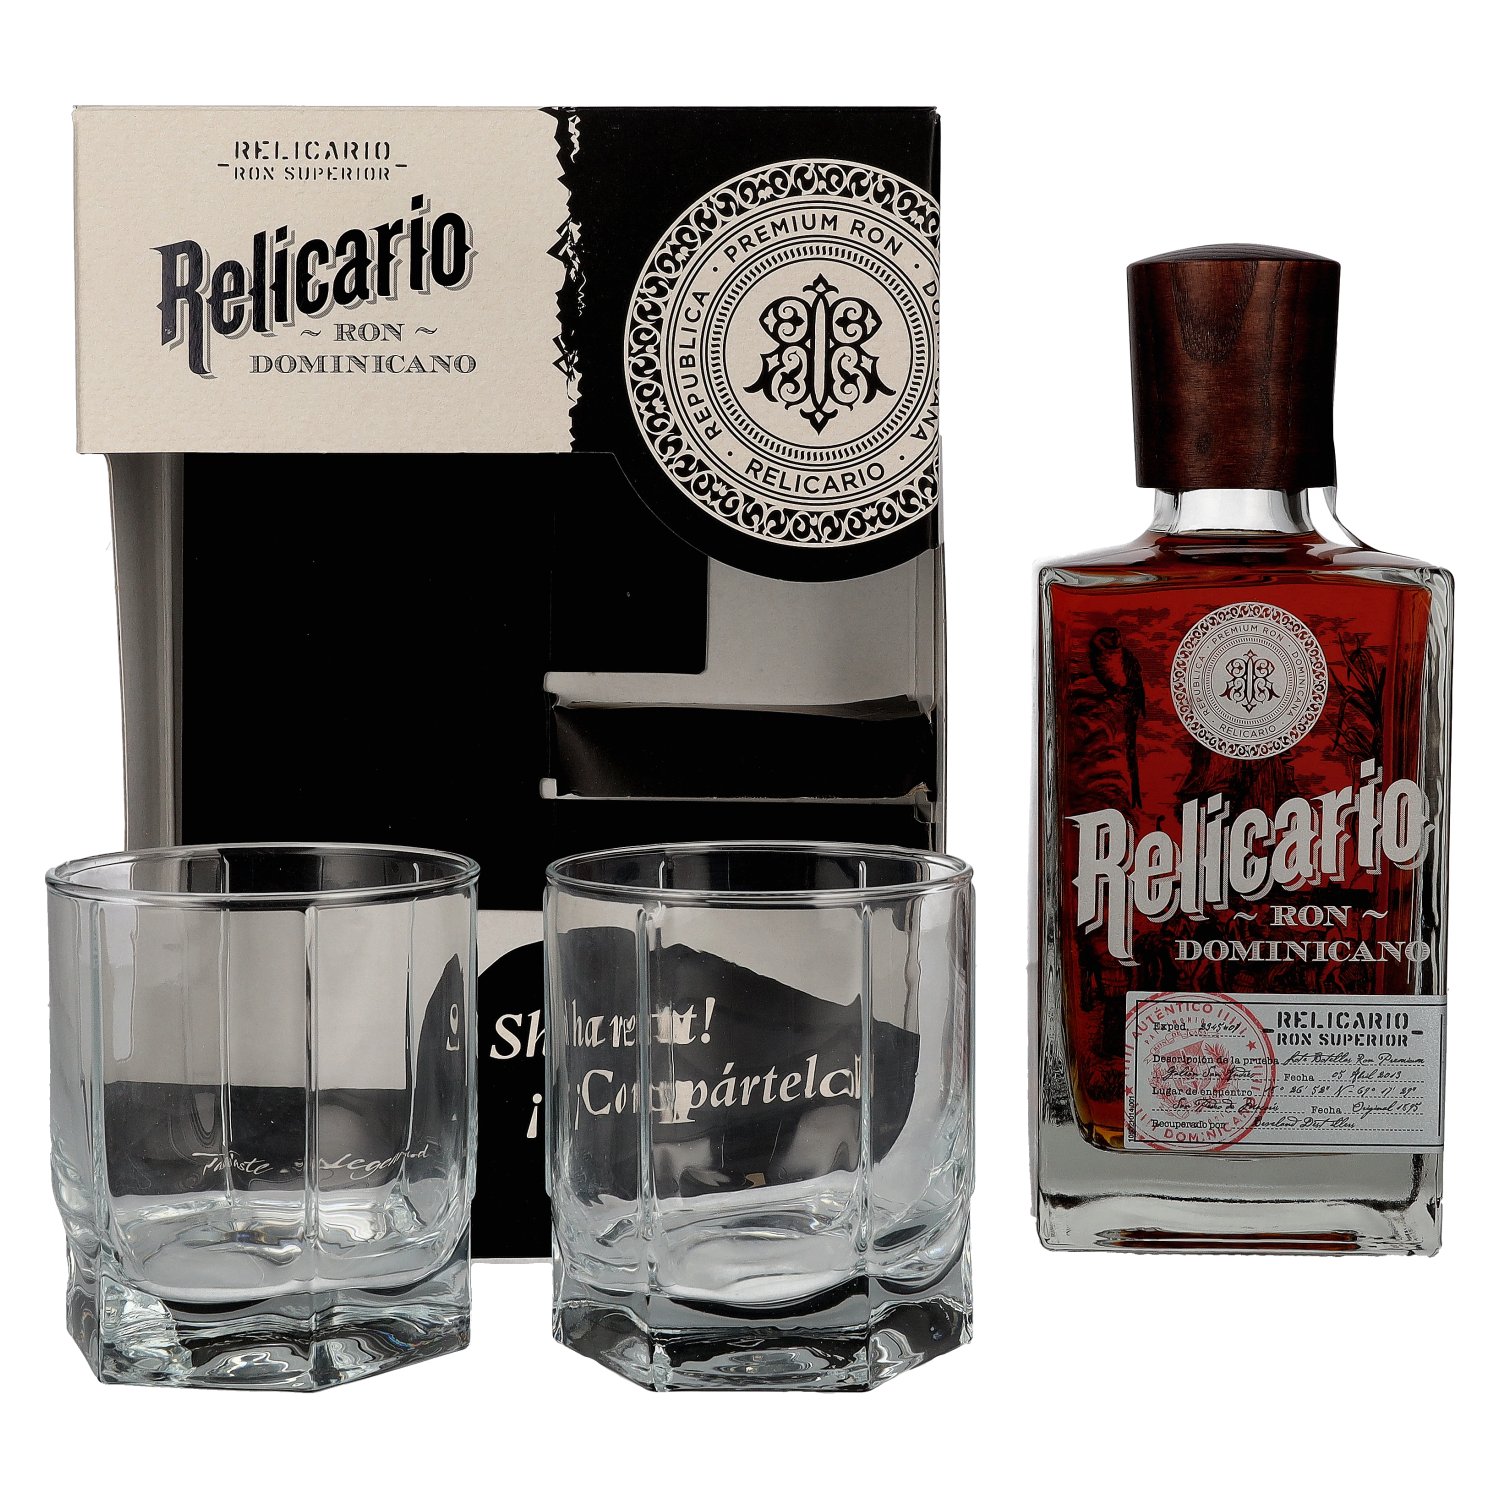 Relicario Ron Dominicano Superior 40% 2 0,7l with glasses Giftbox Vol. in